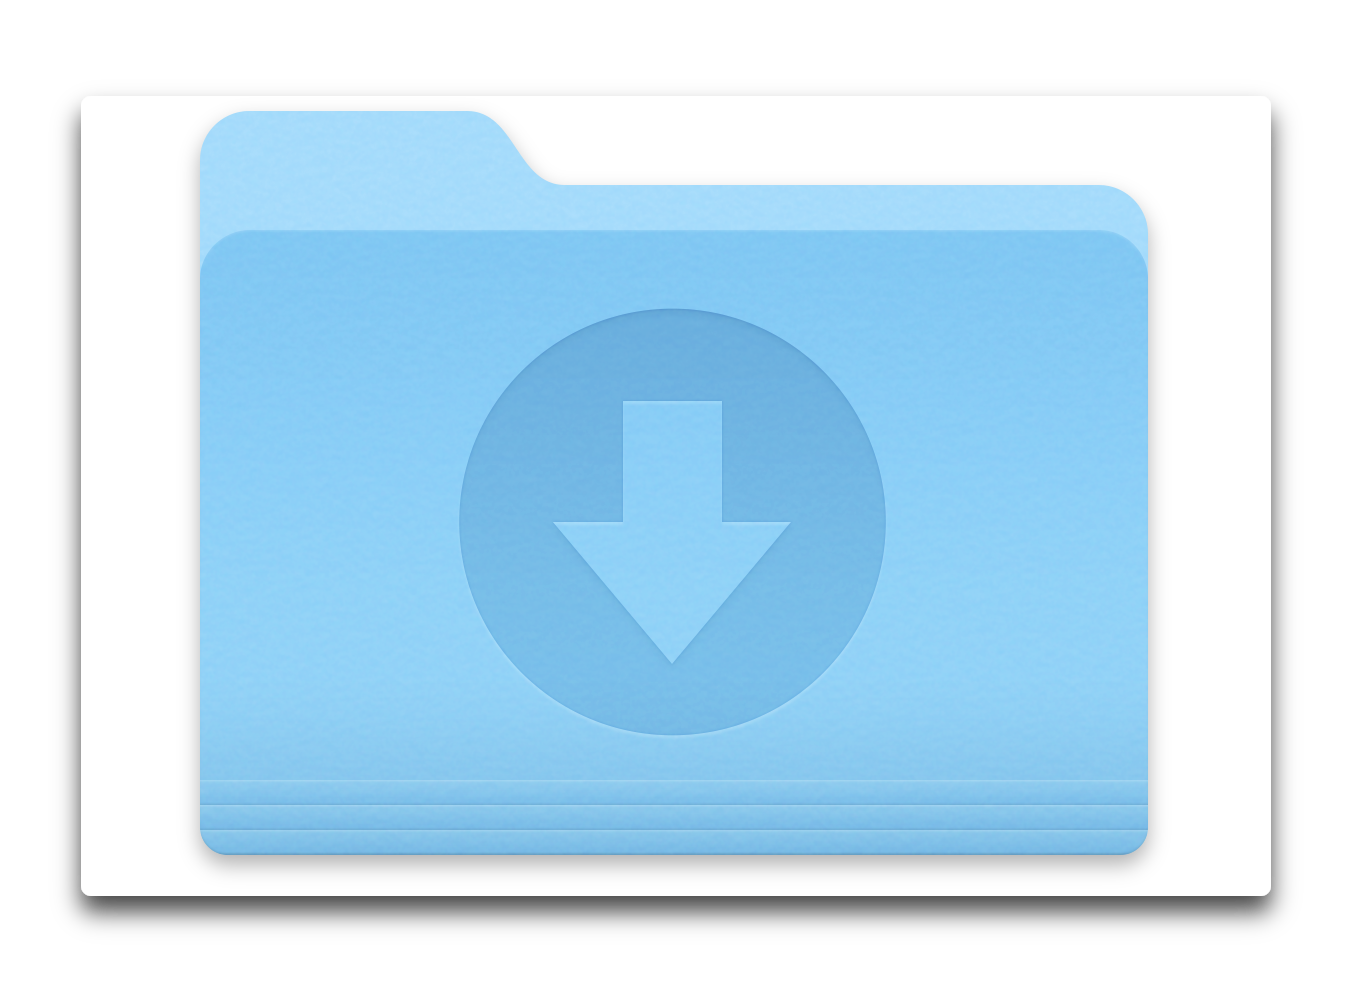 【Mac】ダウンロードしたファイルを自動的に削除する 3つの方法